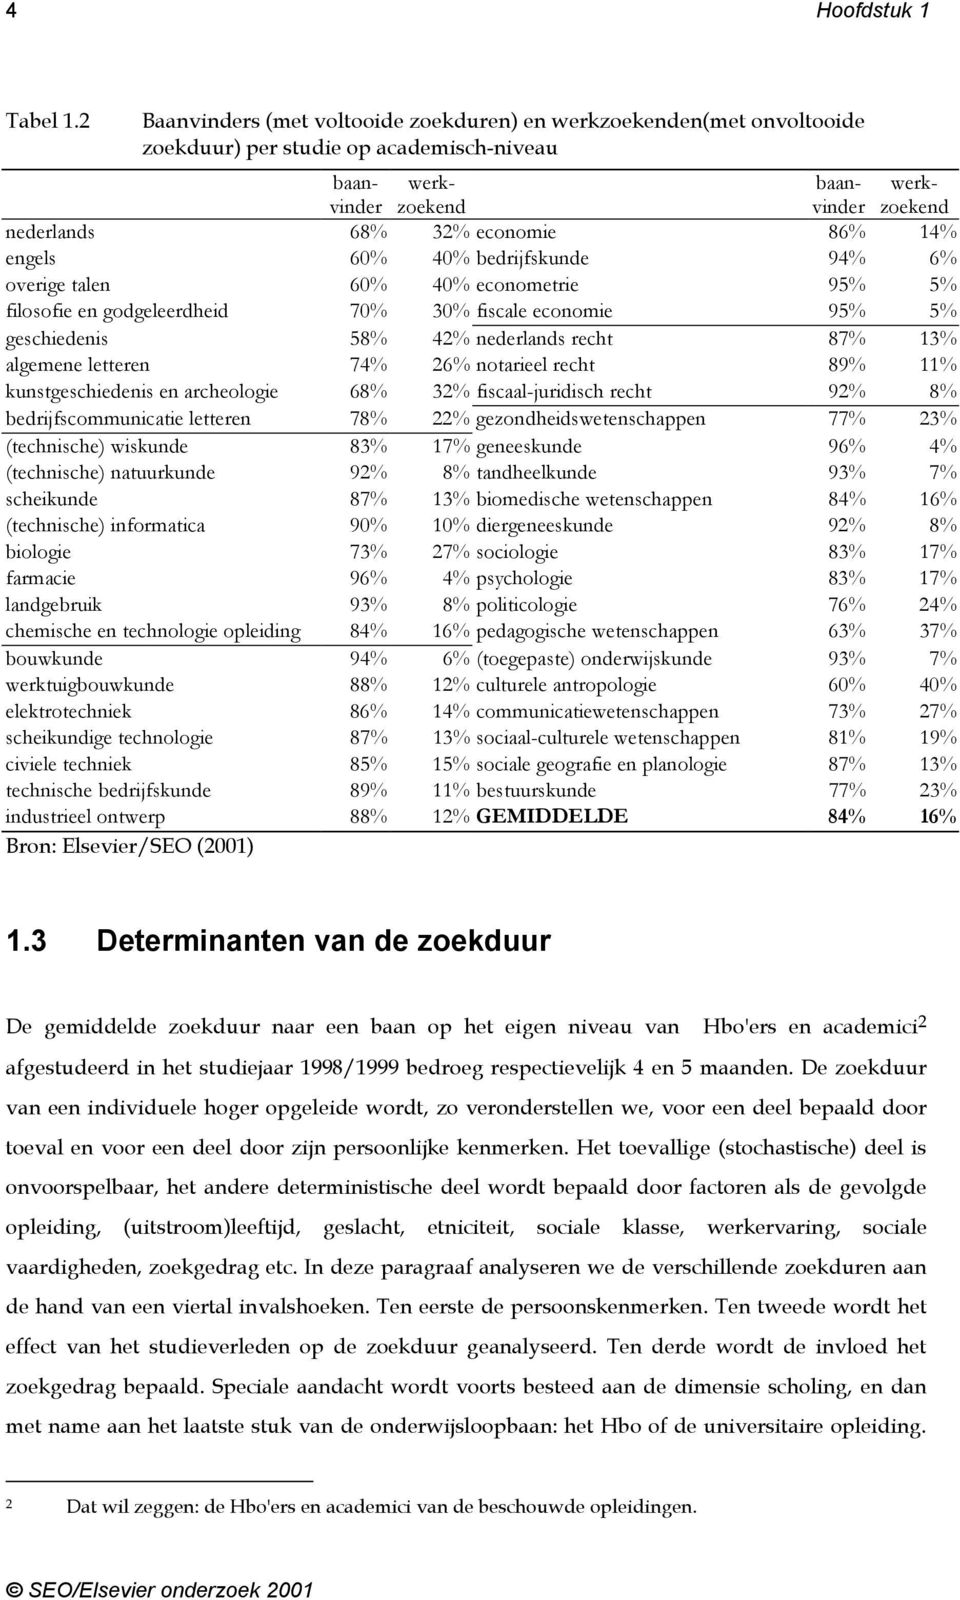 14% engels 60% 40% bedrijfskunde 94% 6% overige talen 60% 40% econometrie 95% 5% filosofie en godgeleerdheid 70% 30% fiscale economie 95% 5% geschiedenis 58% 42% nederlands recht 87% 13% algemene